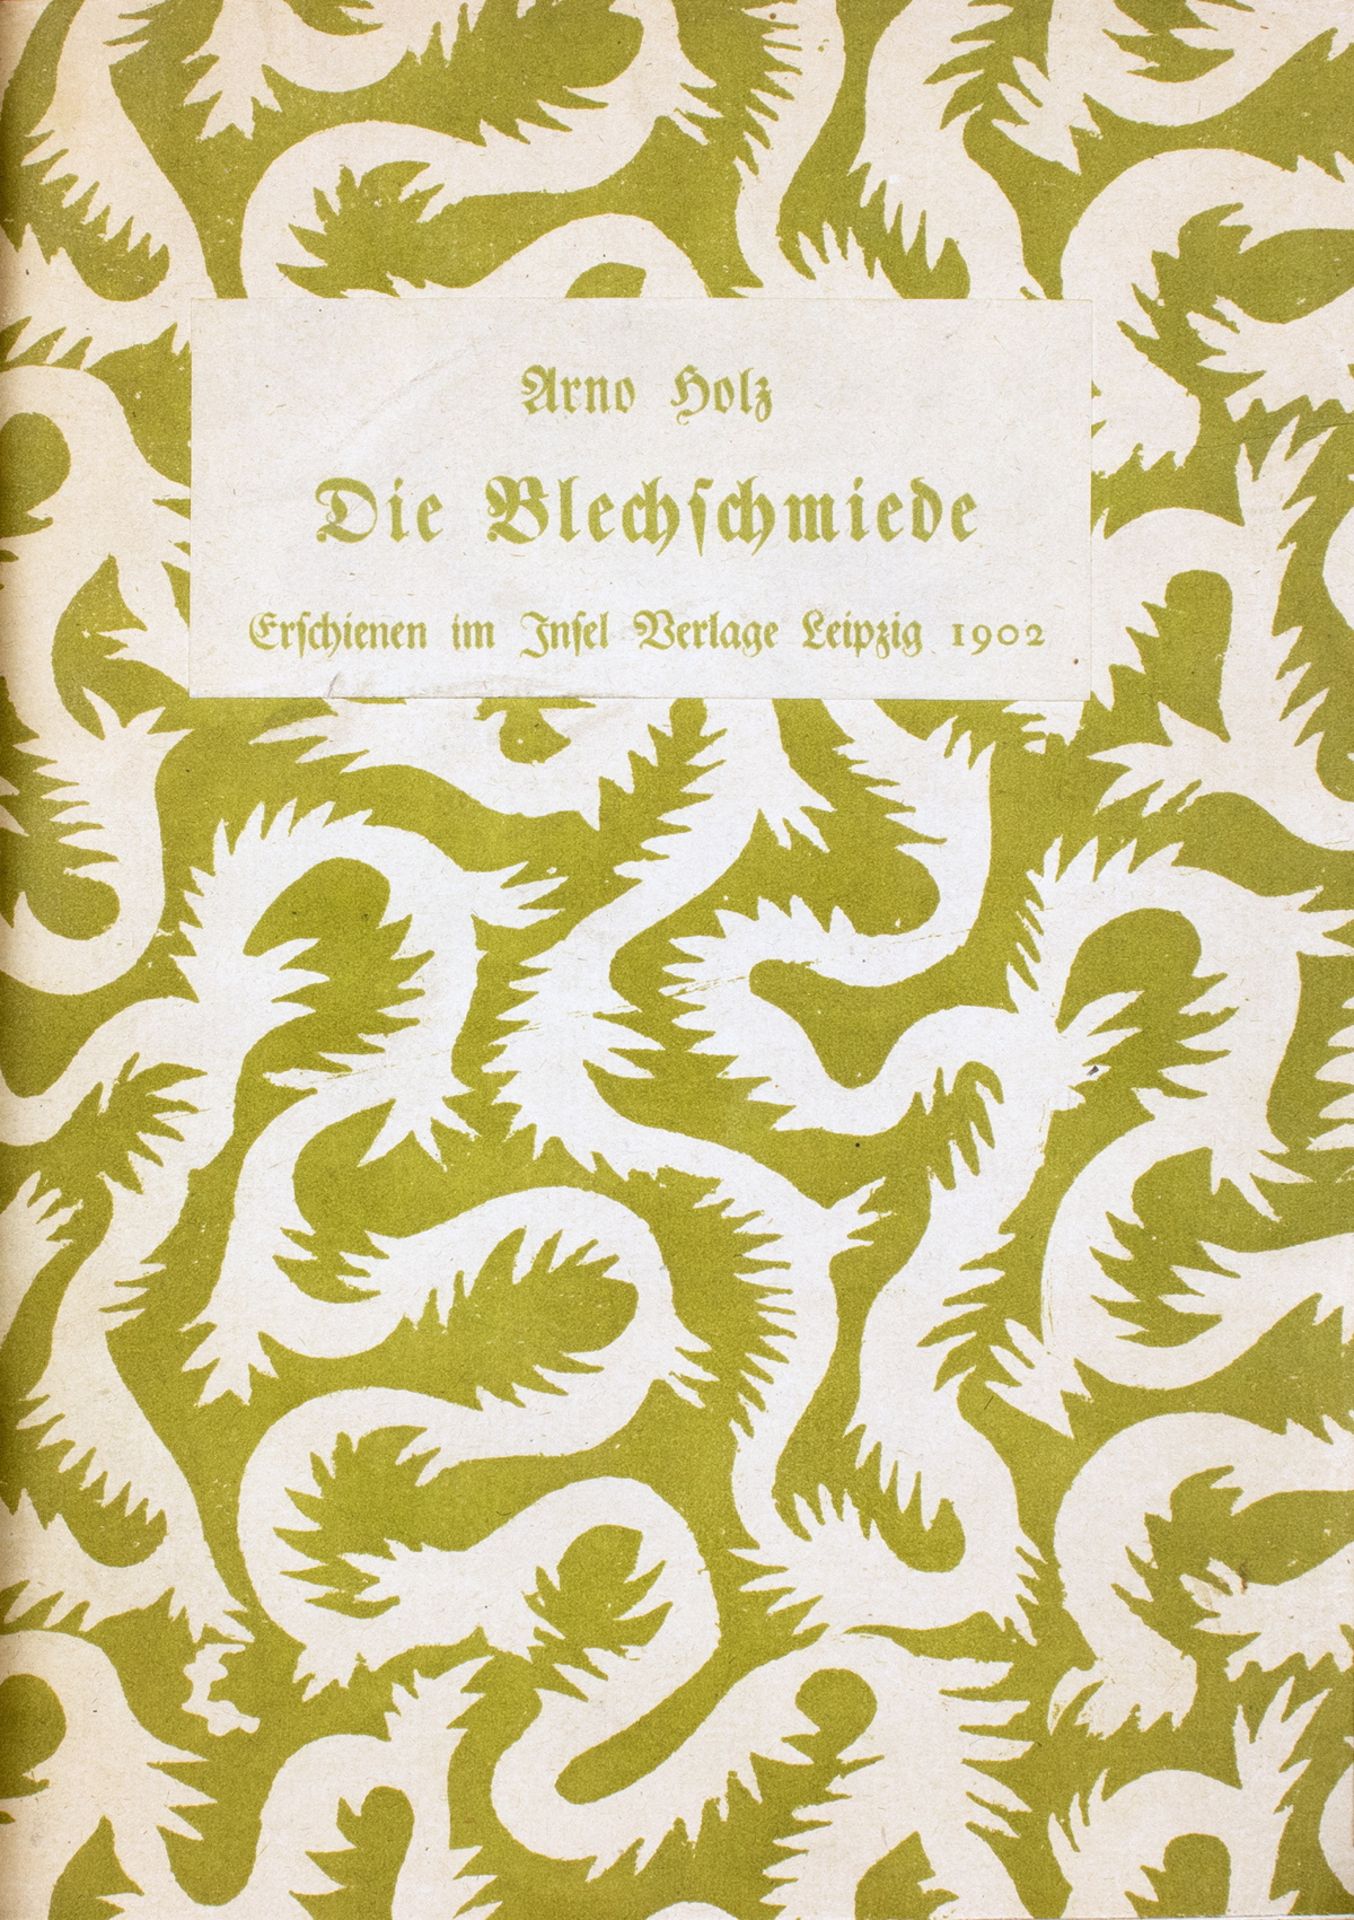 Insel-Verlag - Arno Holz. Die Blechschmiede. 1902 - Bild 3 aus 3